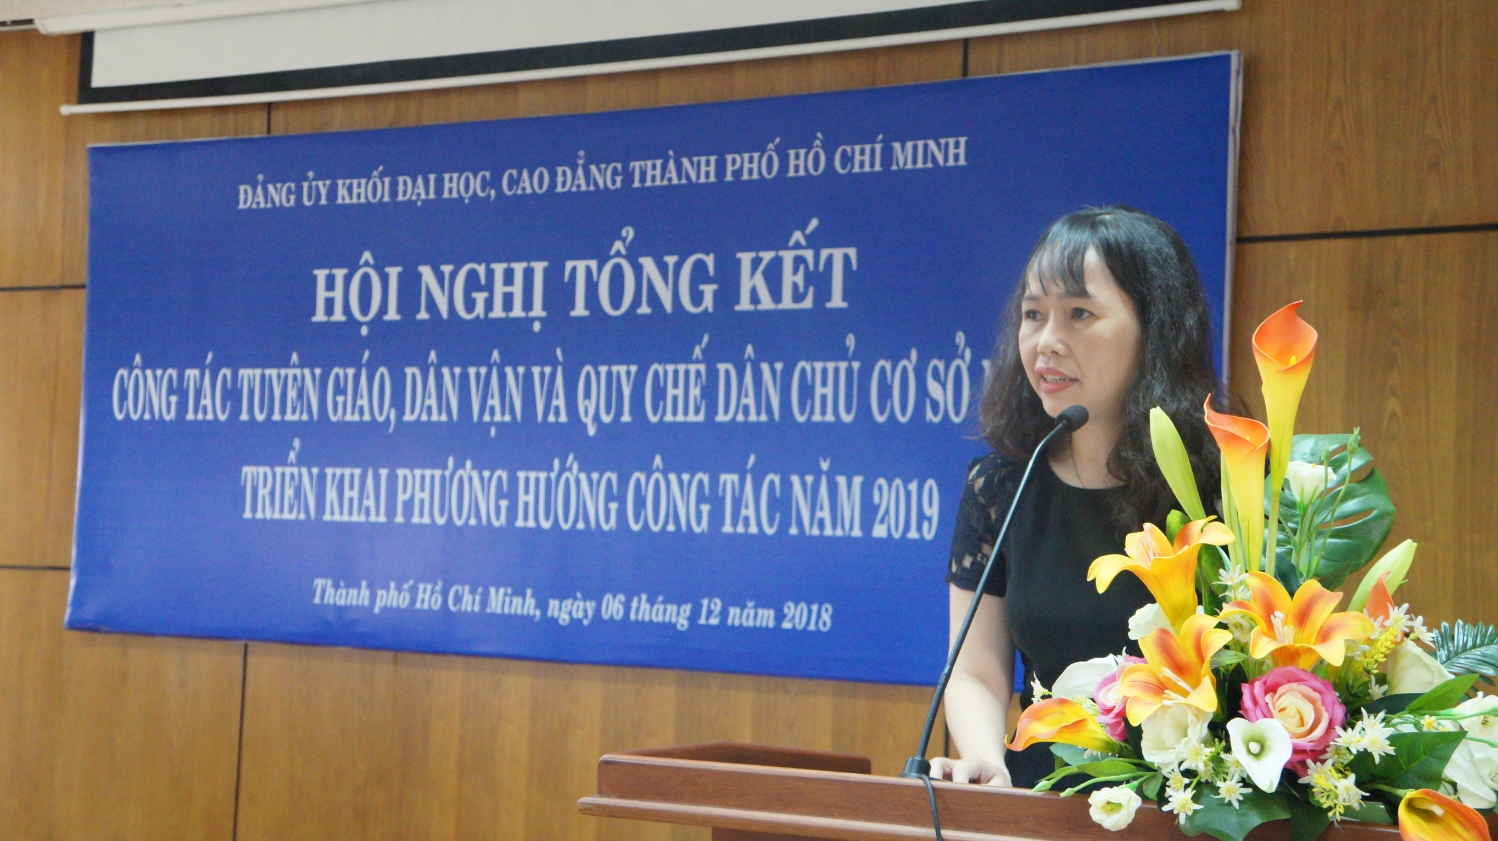 Đồng chí Lê Ngọc Hạnh - Ủy viên Ban Thường vụ ĐUK, Trưởng Ban Tuyên giáo ĐUK báo cáo tại Hội nghị